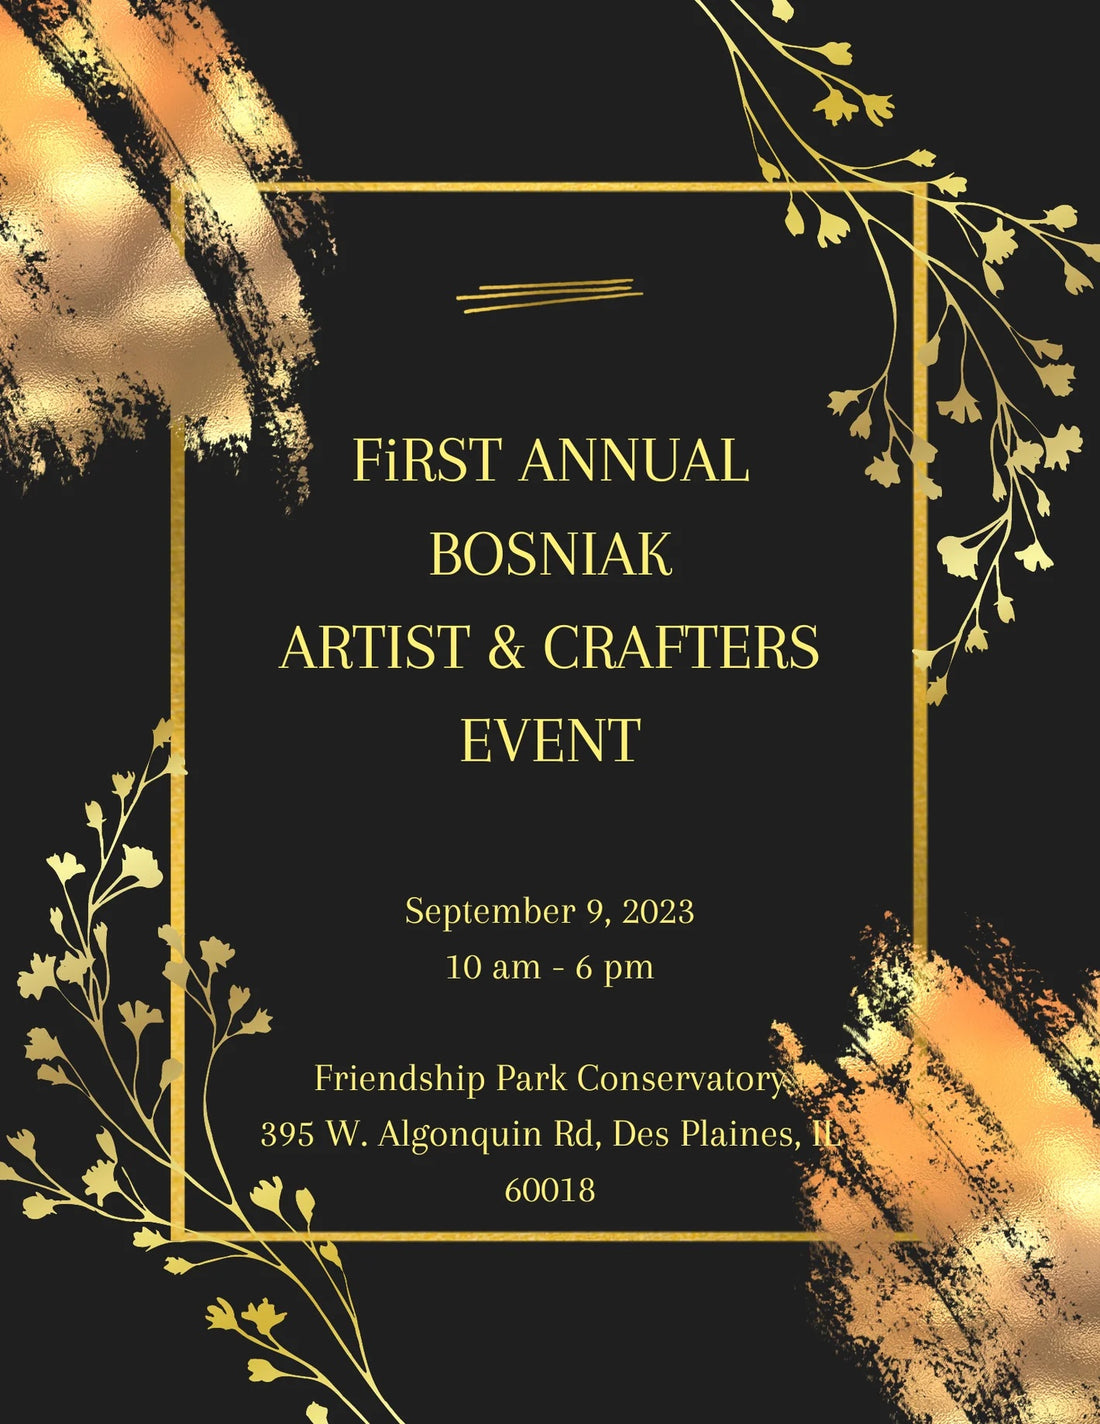 First Annual Bosniak Artist & Crafters Event